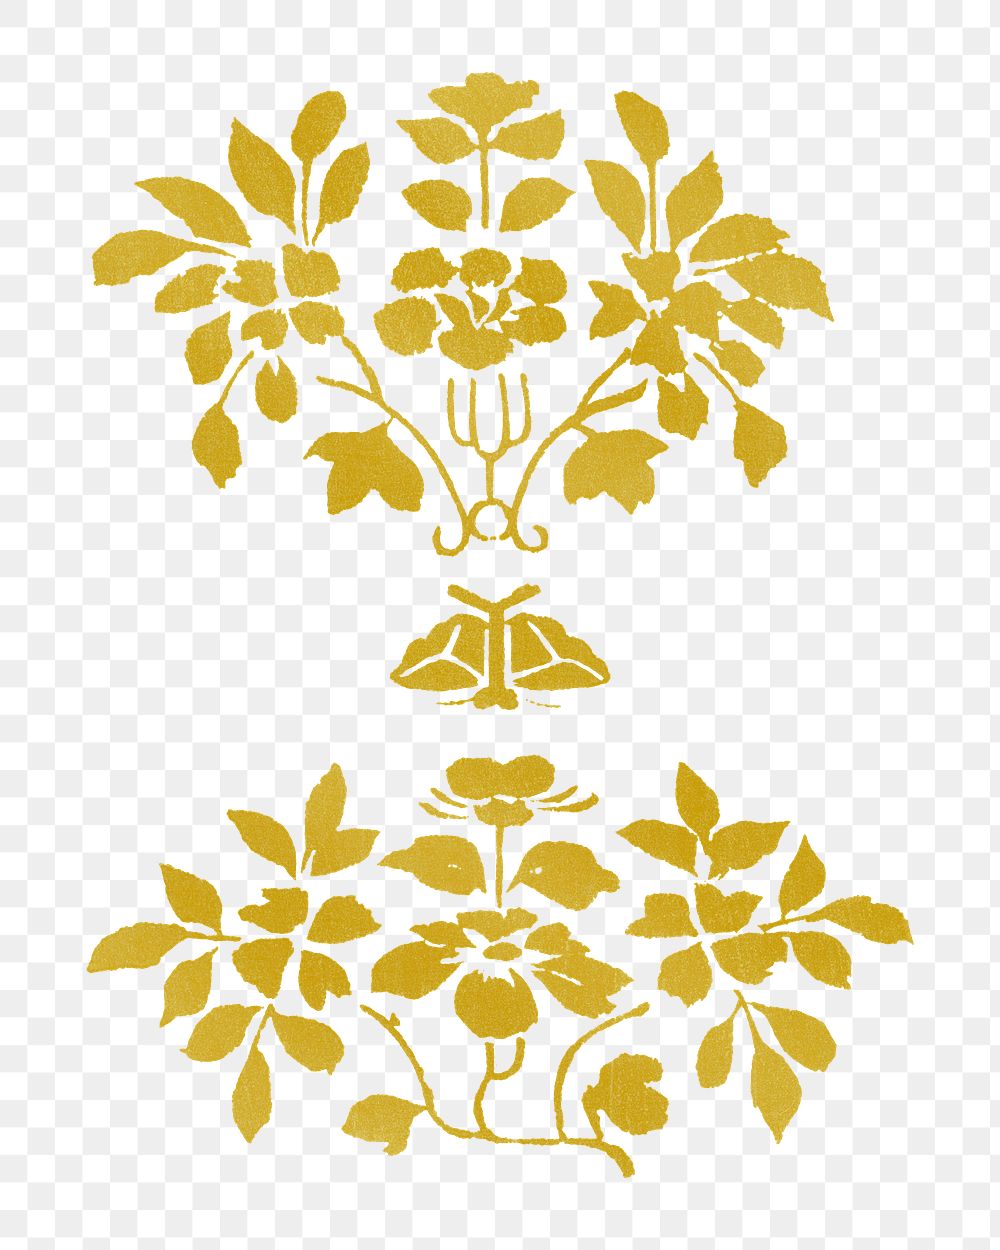 Gold flower png vintage illustration, transparent background